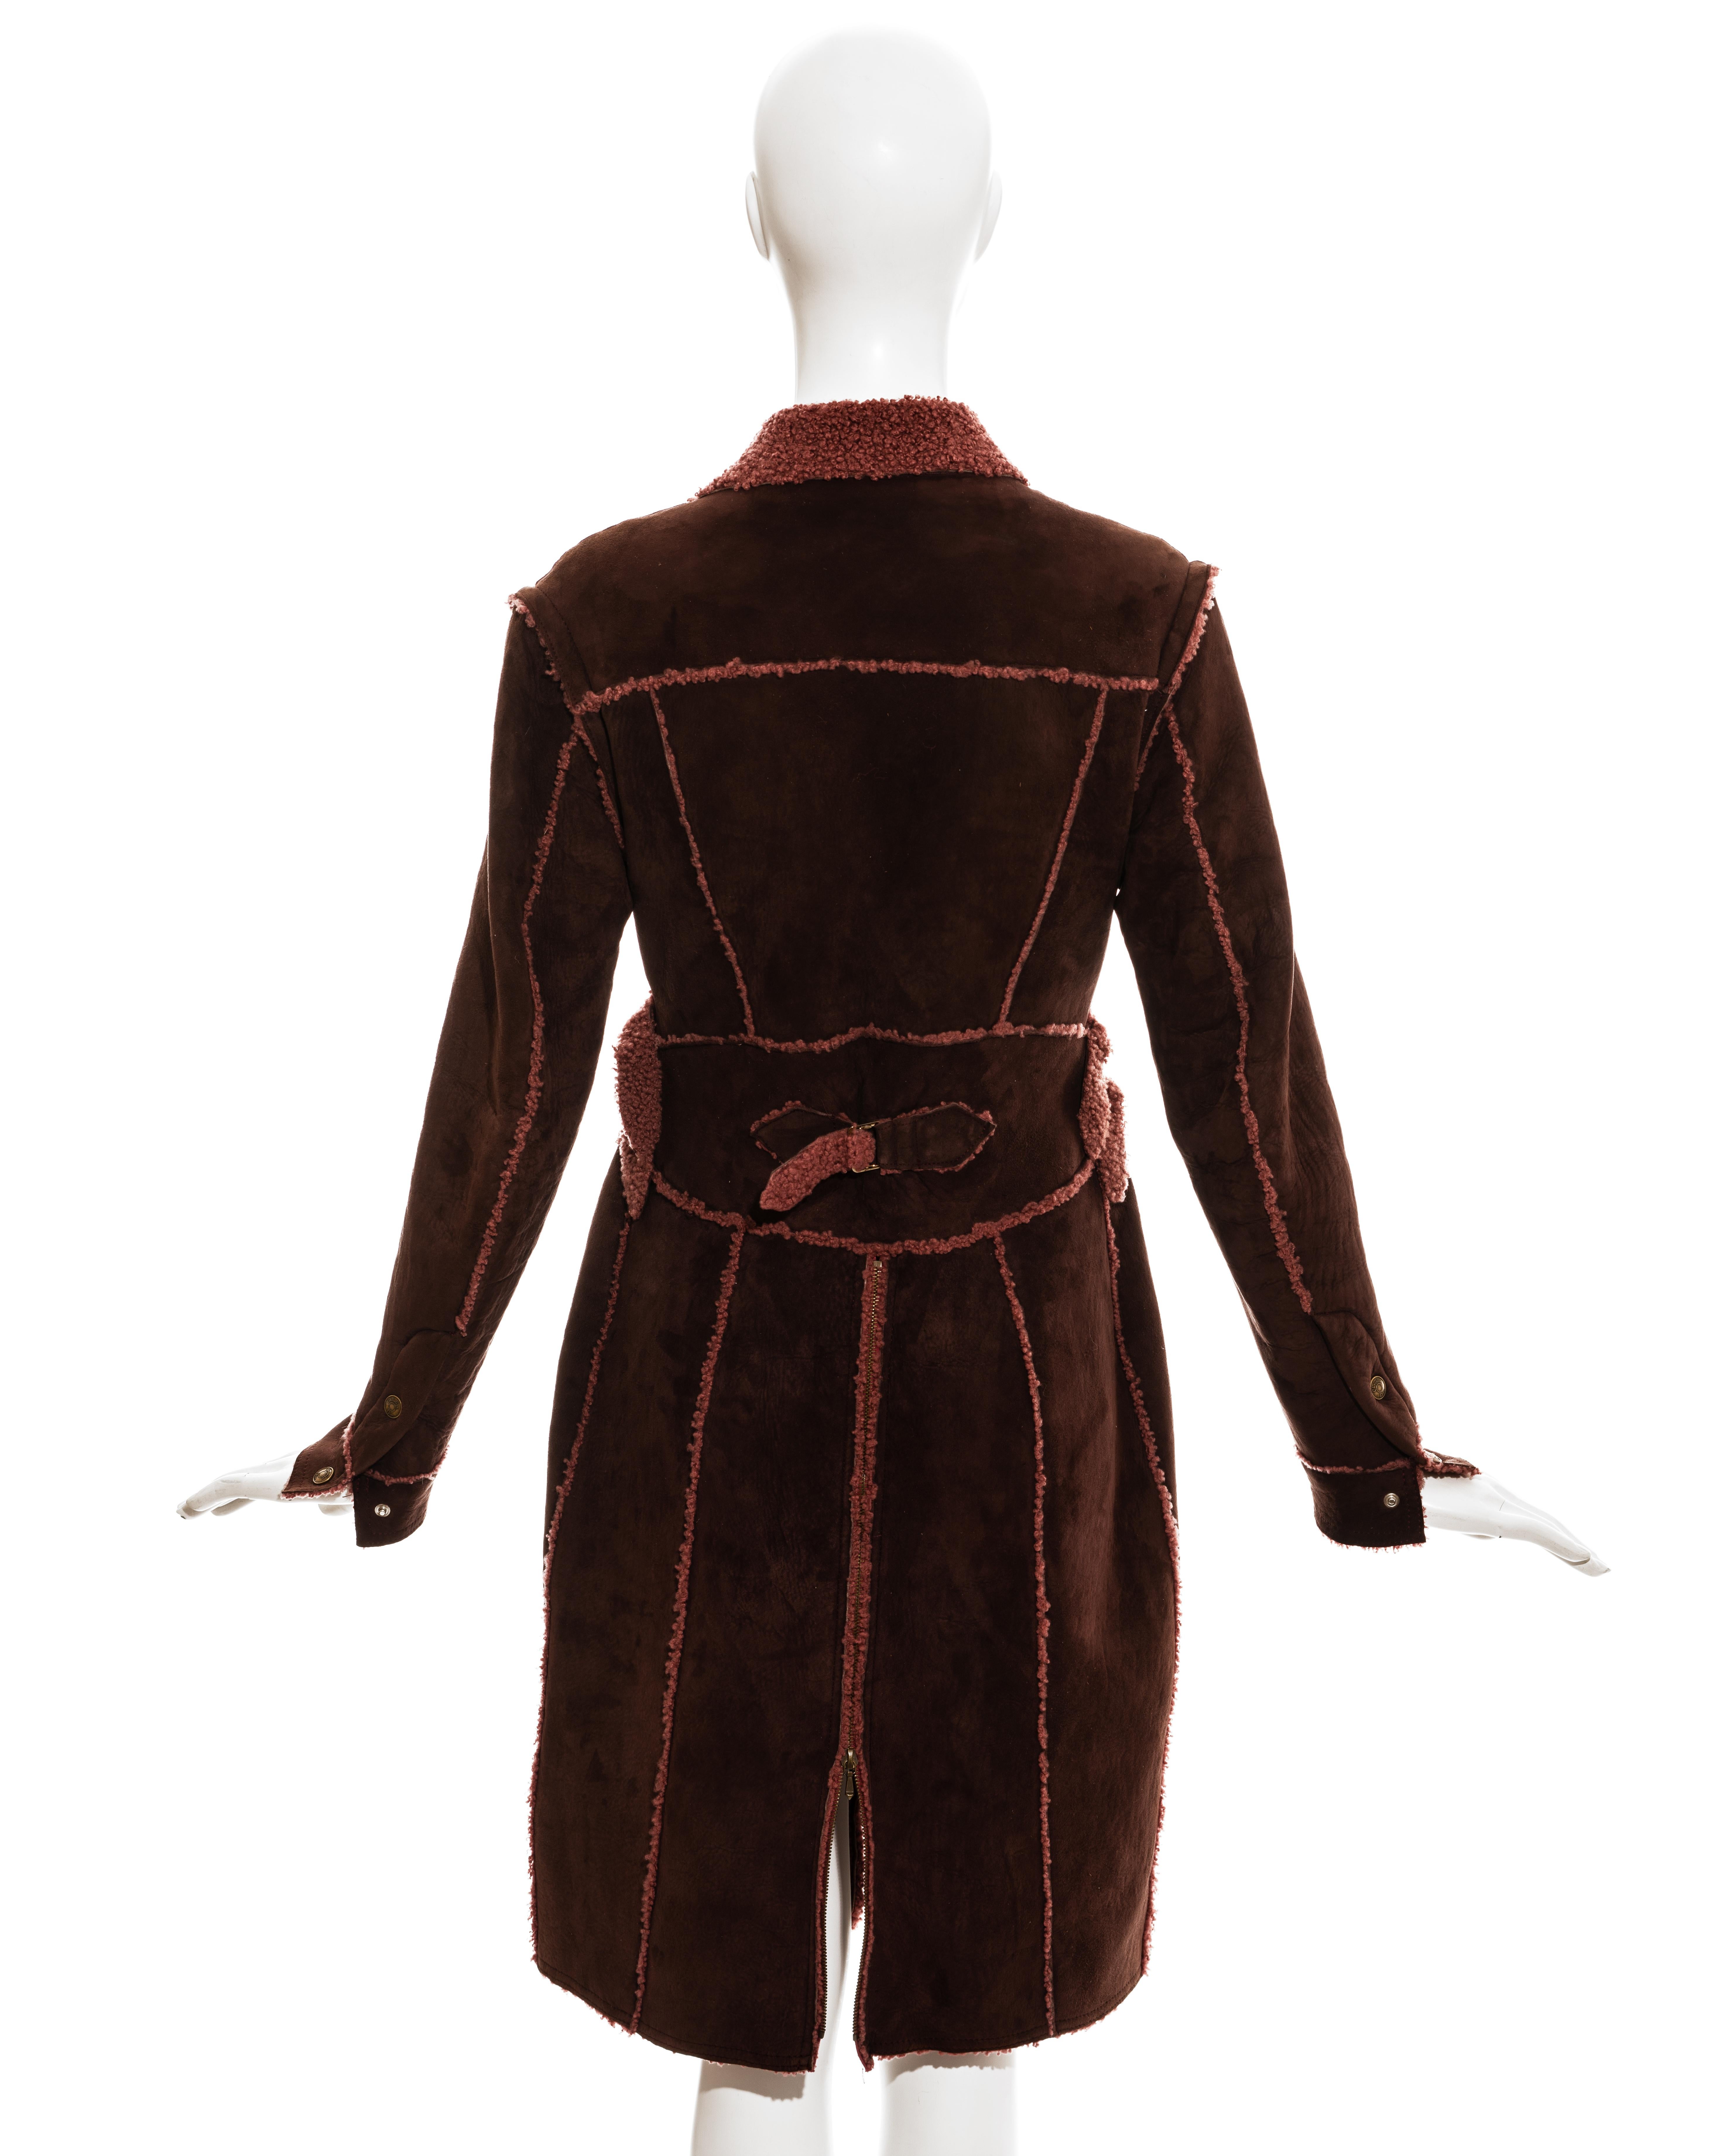 Women's or Men's Christian Dior by John Galliano burgundy shearling coat, fw 2000